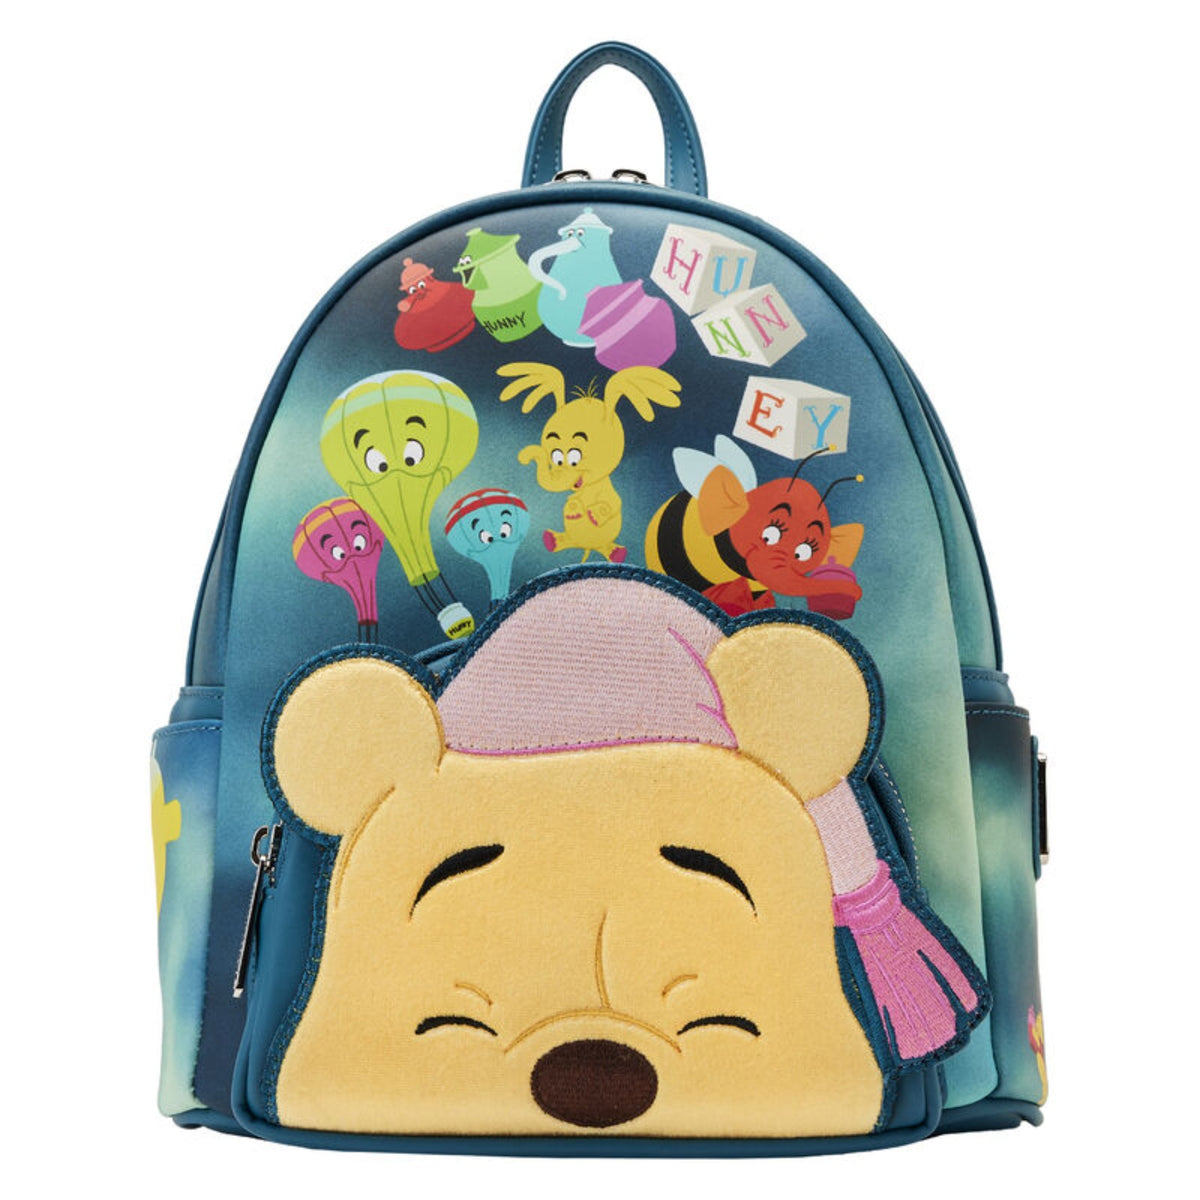 Disney's Winnie The Pooh Custom Painted Vegan Leather Wallet